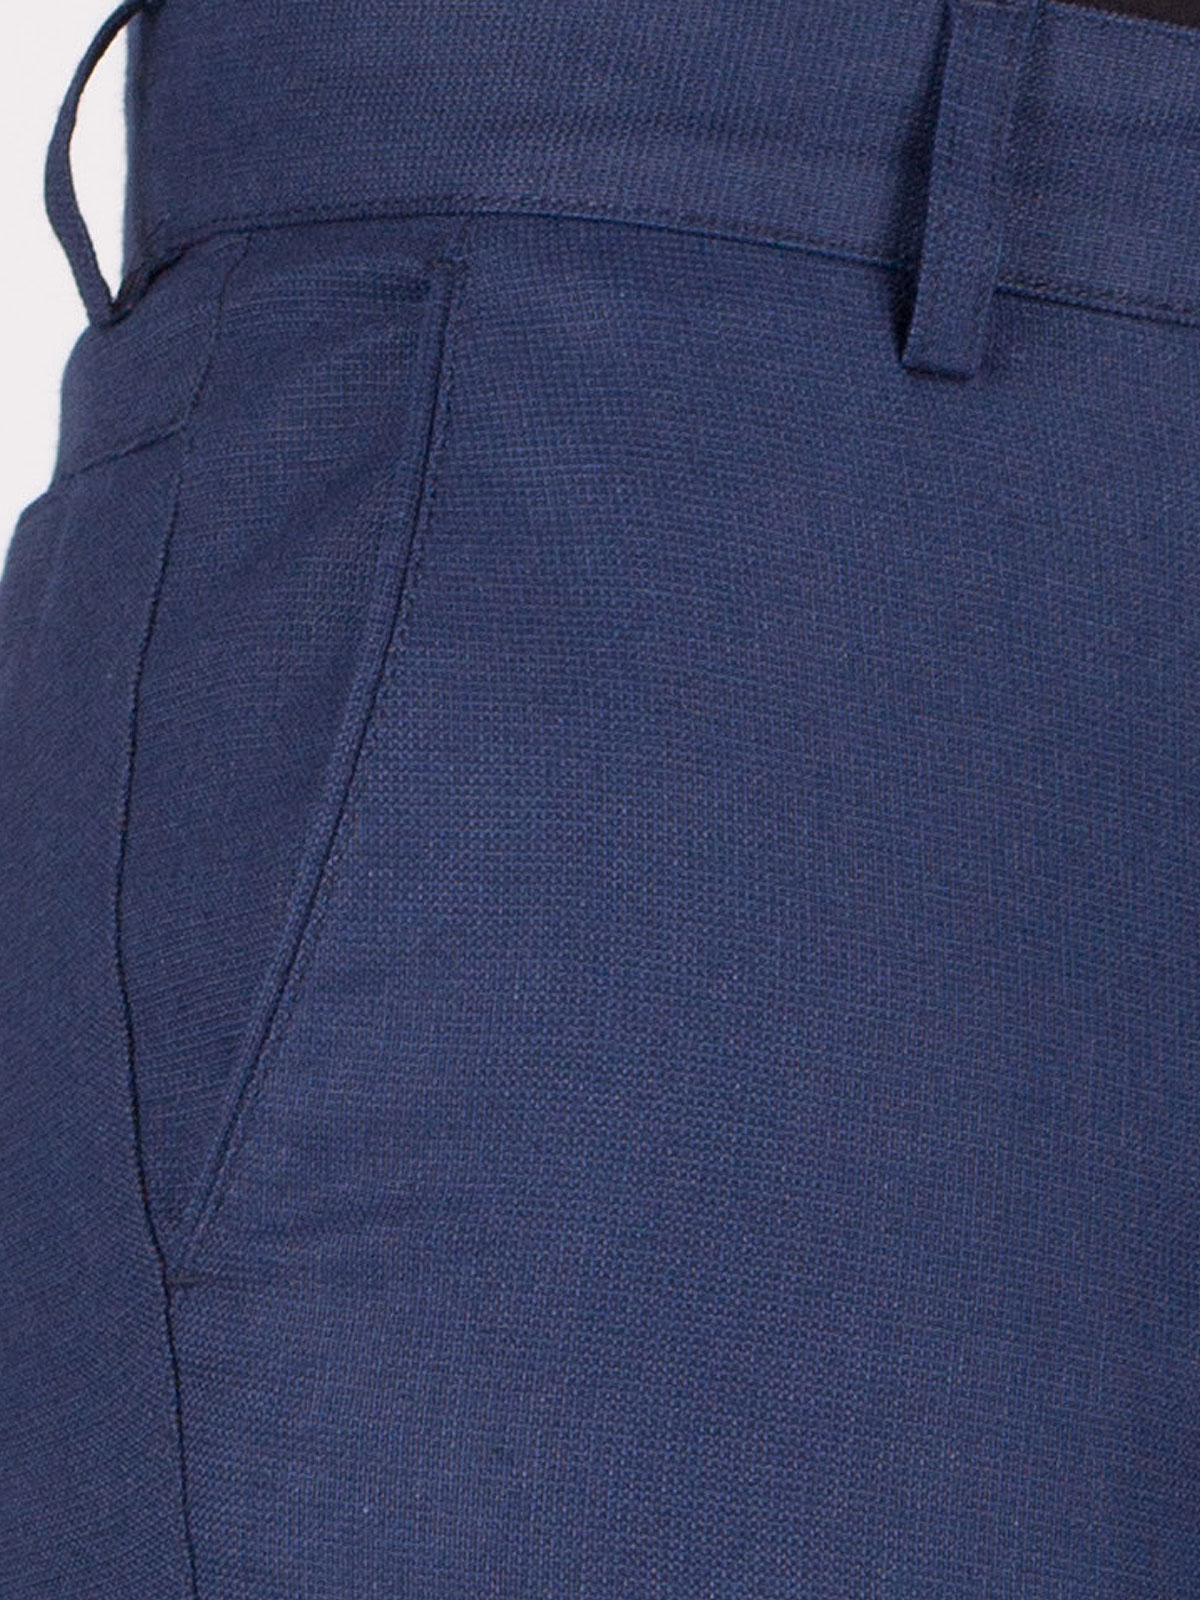 Pantaloni din țesătură cu bob albastru - 60255 € 21.93 img3